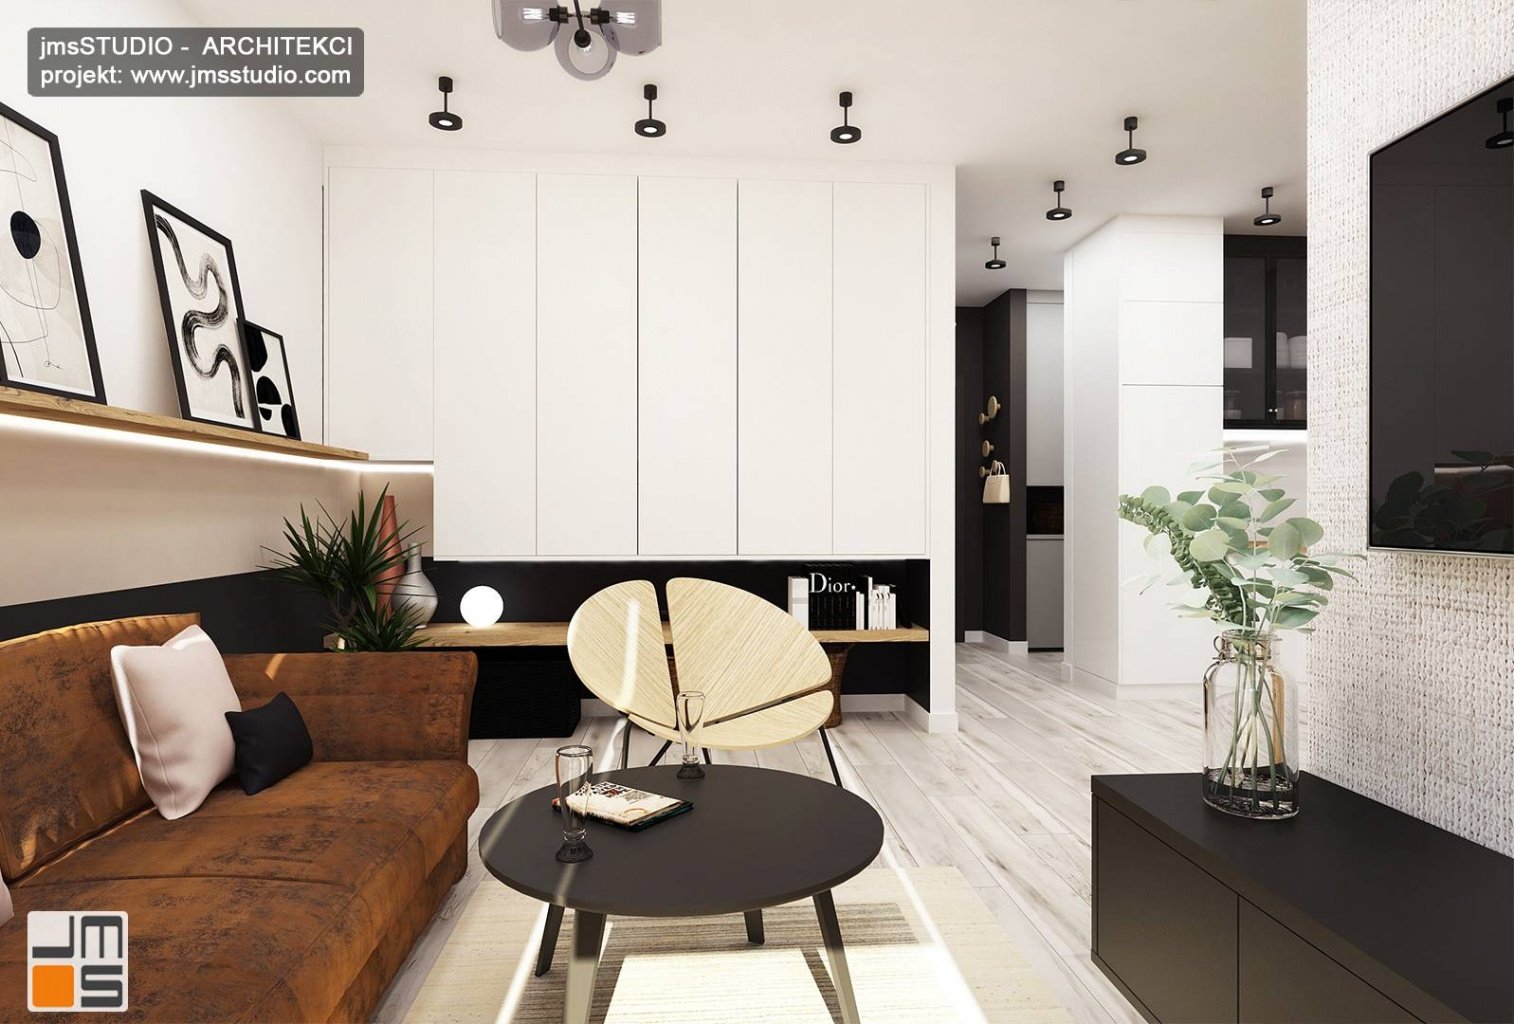 prosty-i-nowoczesny-wnetrz-luksusowego-mieszkania-w-jasnych-kolorach-z-nuta-industrialna-to-designerskie-fotele-w-salonie-z-designerska-sofa